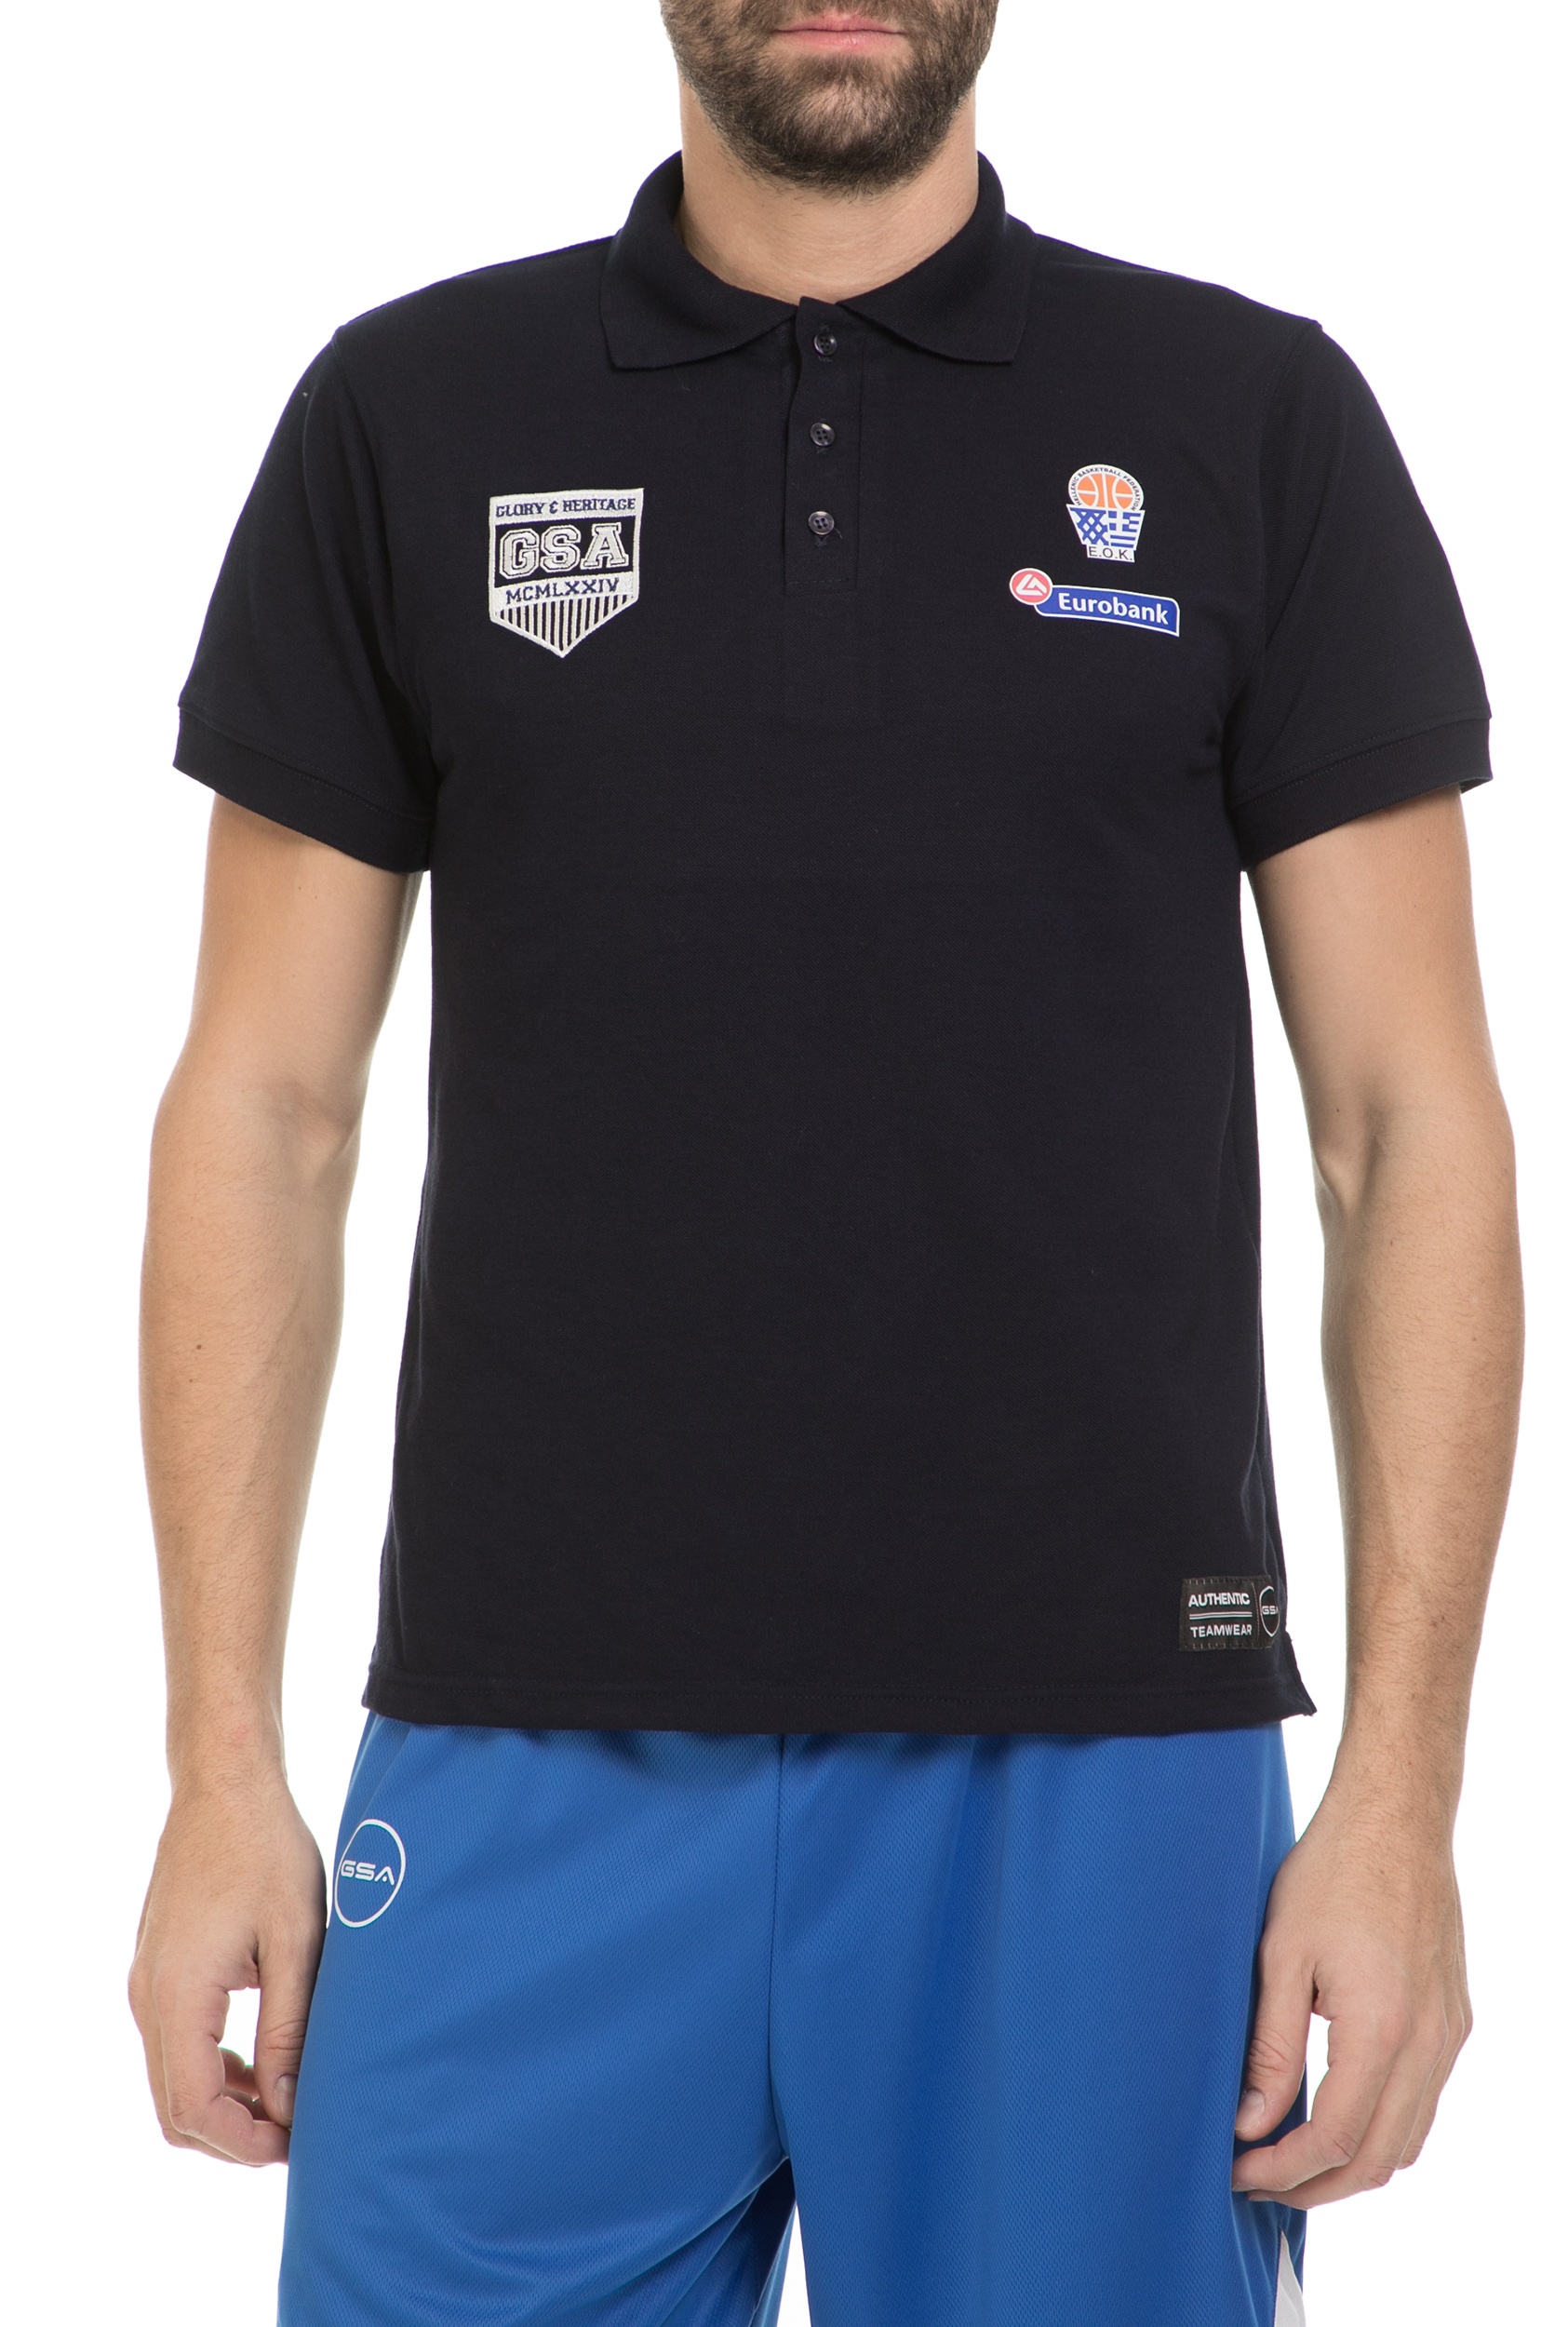 Ανδρικά/Ρούχα/Αθλητικά/T-shirt GSA - Ανδρική πόλο μπλούζα GSA μαύρο